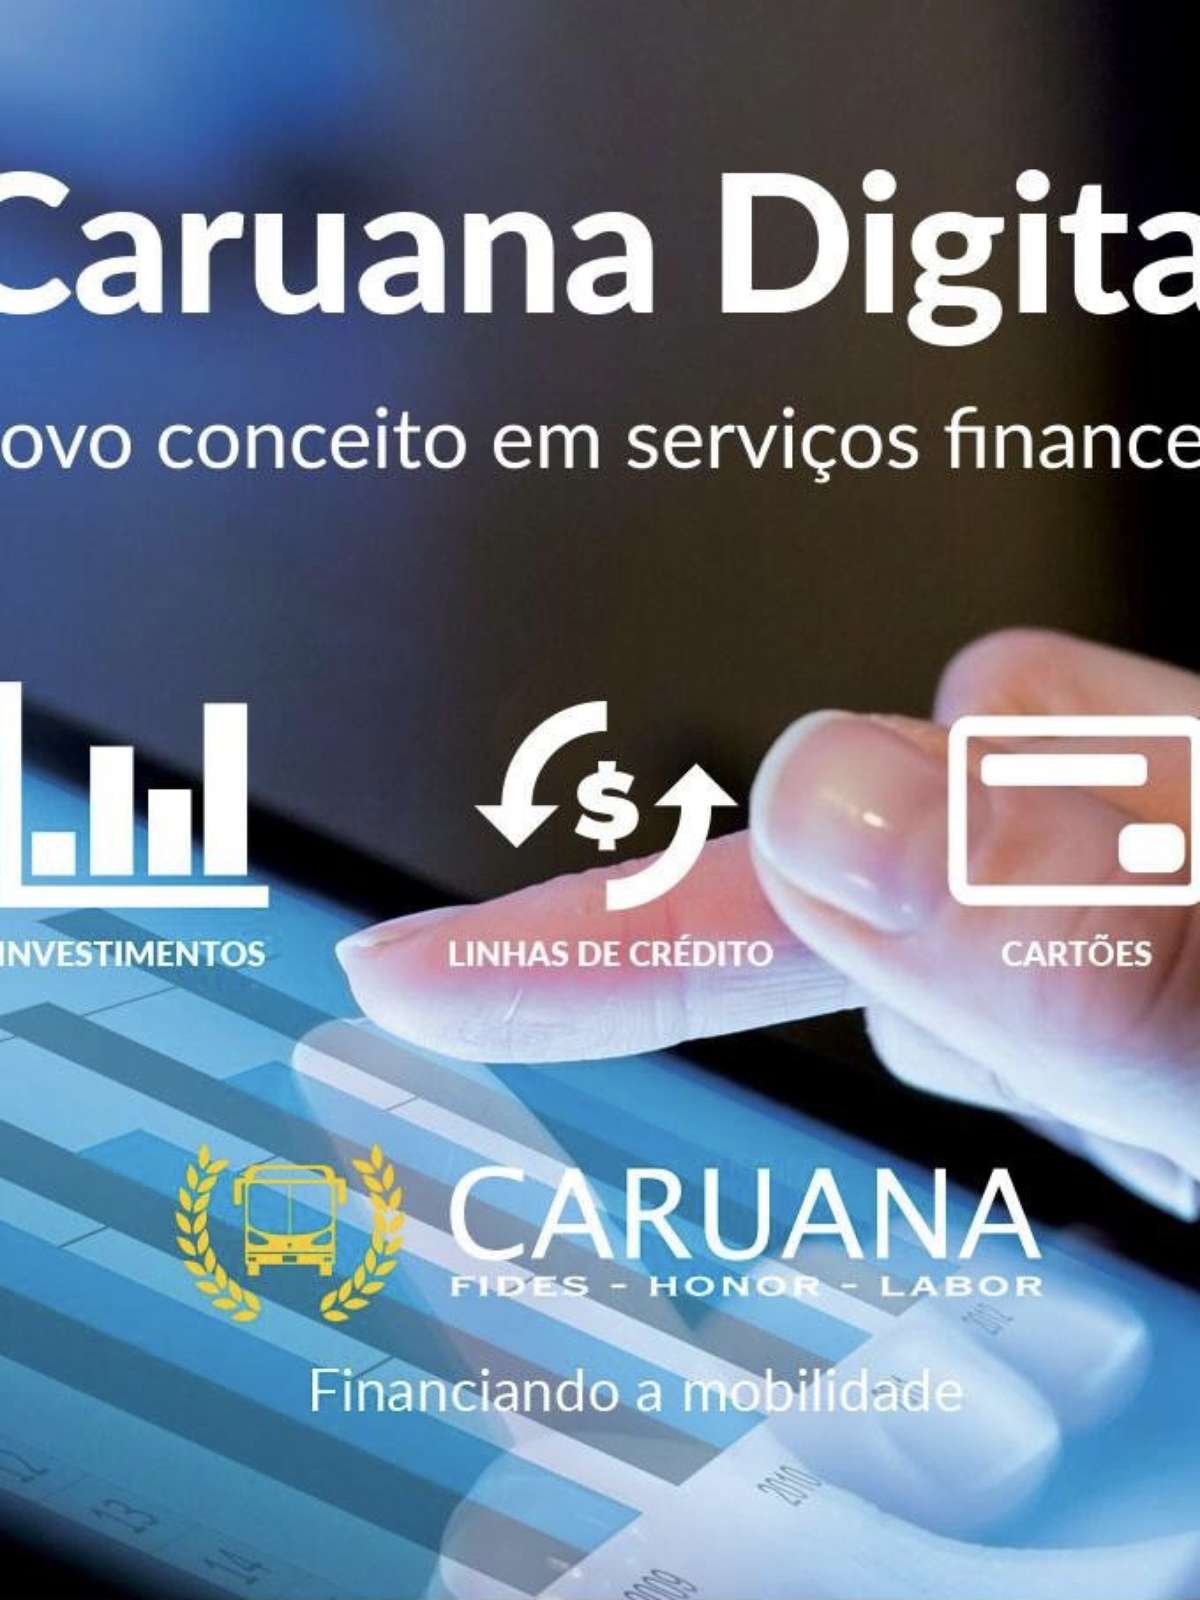 Caruana Financeira cria canal digital de serviços financeiros e traz